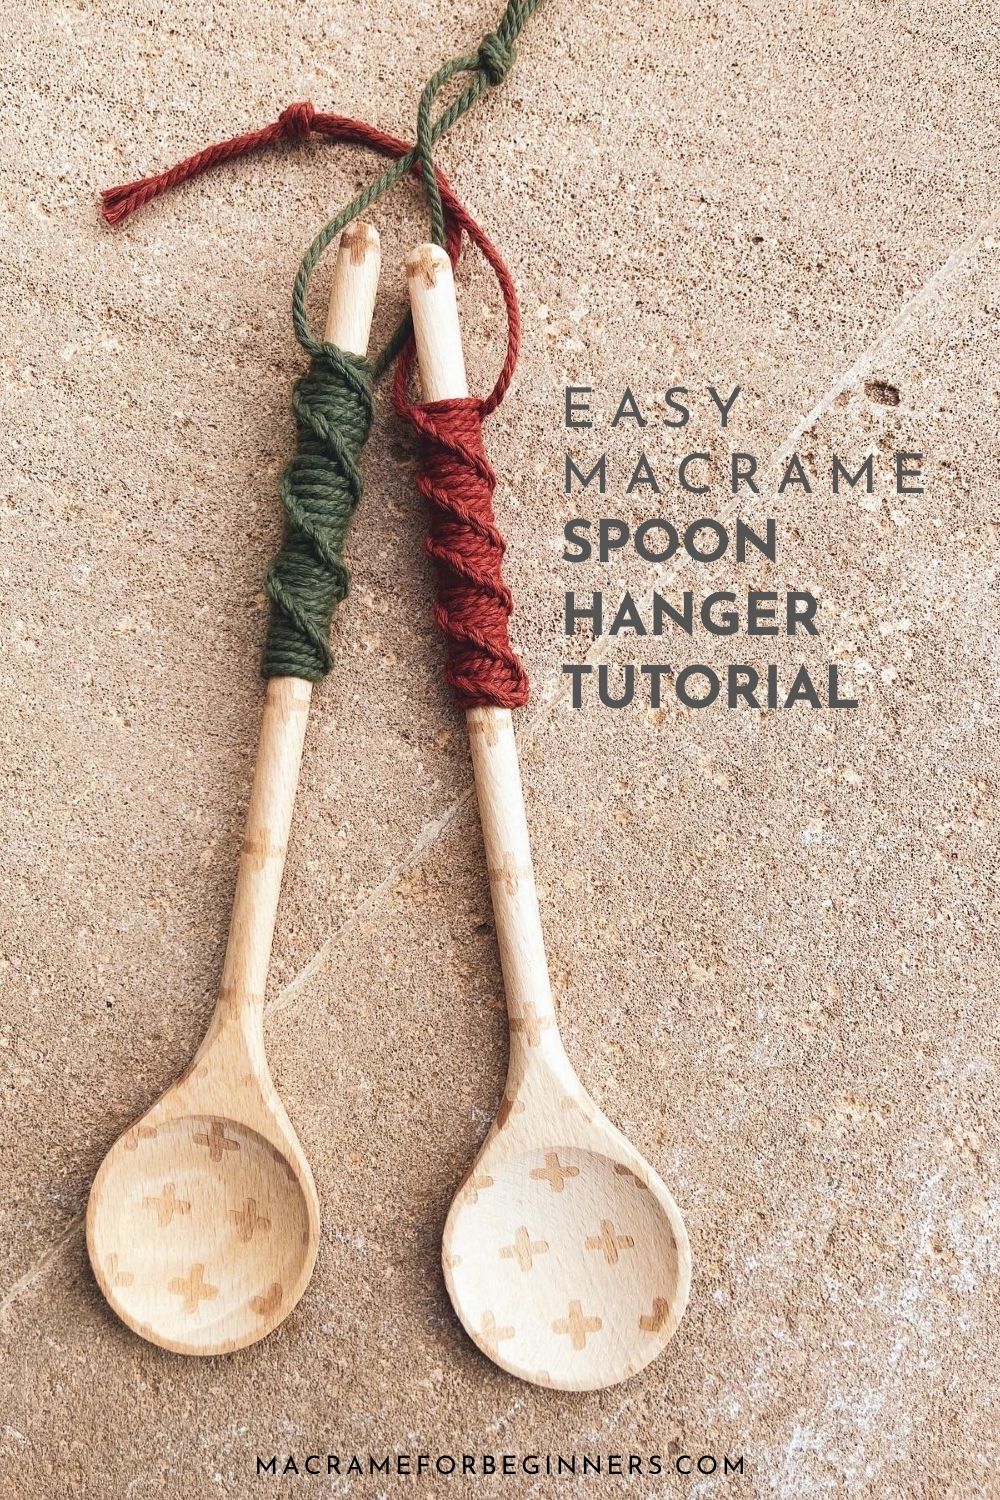 Easy DIY Macrame Spoon Hanger Tutorial by Marloes Ratten